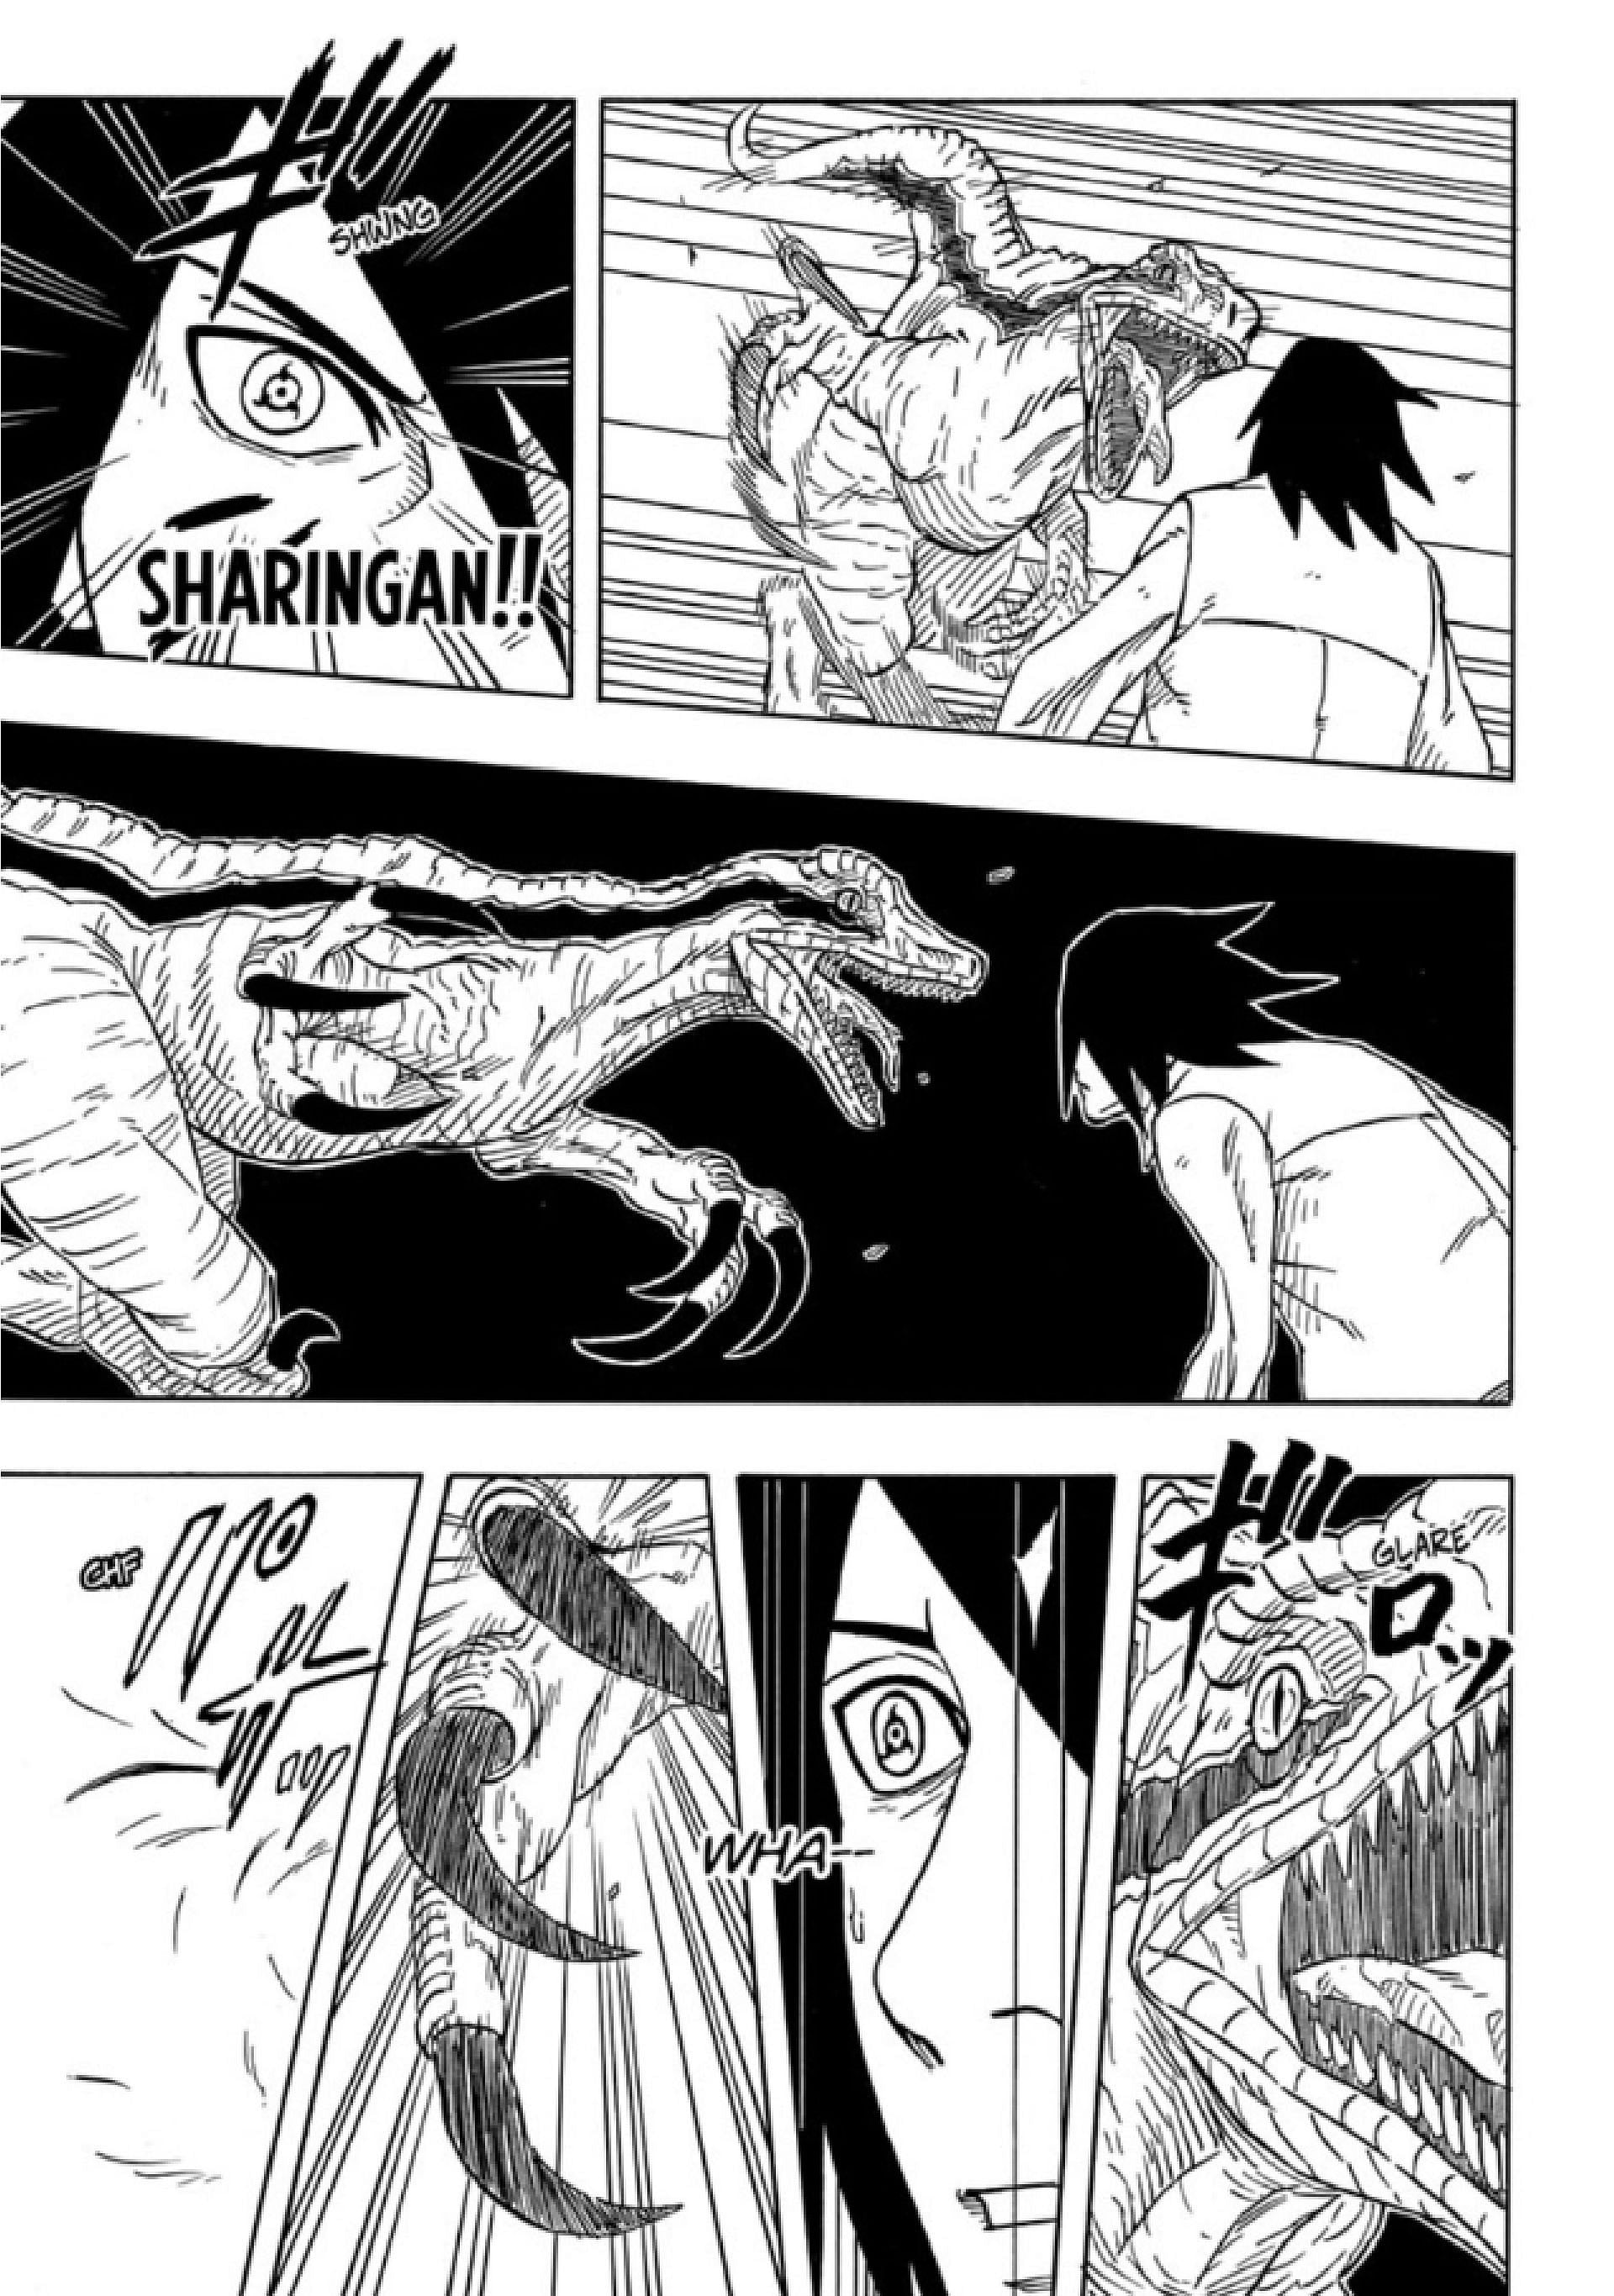 Sasuke fights Meno (Image via Jun Esaka/Shueisha)